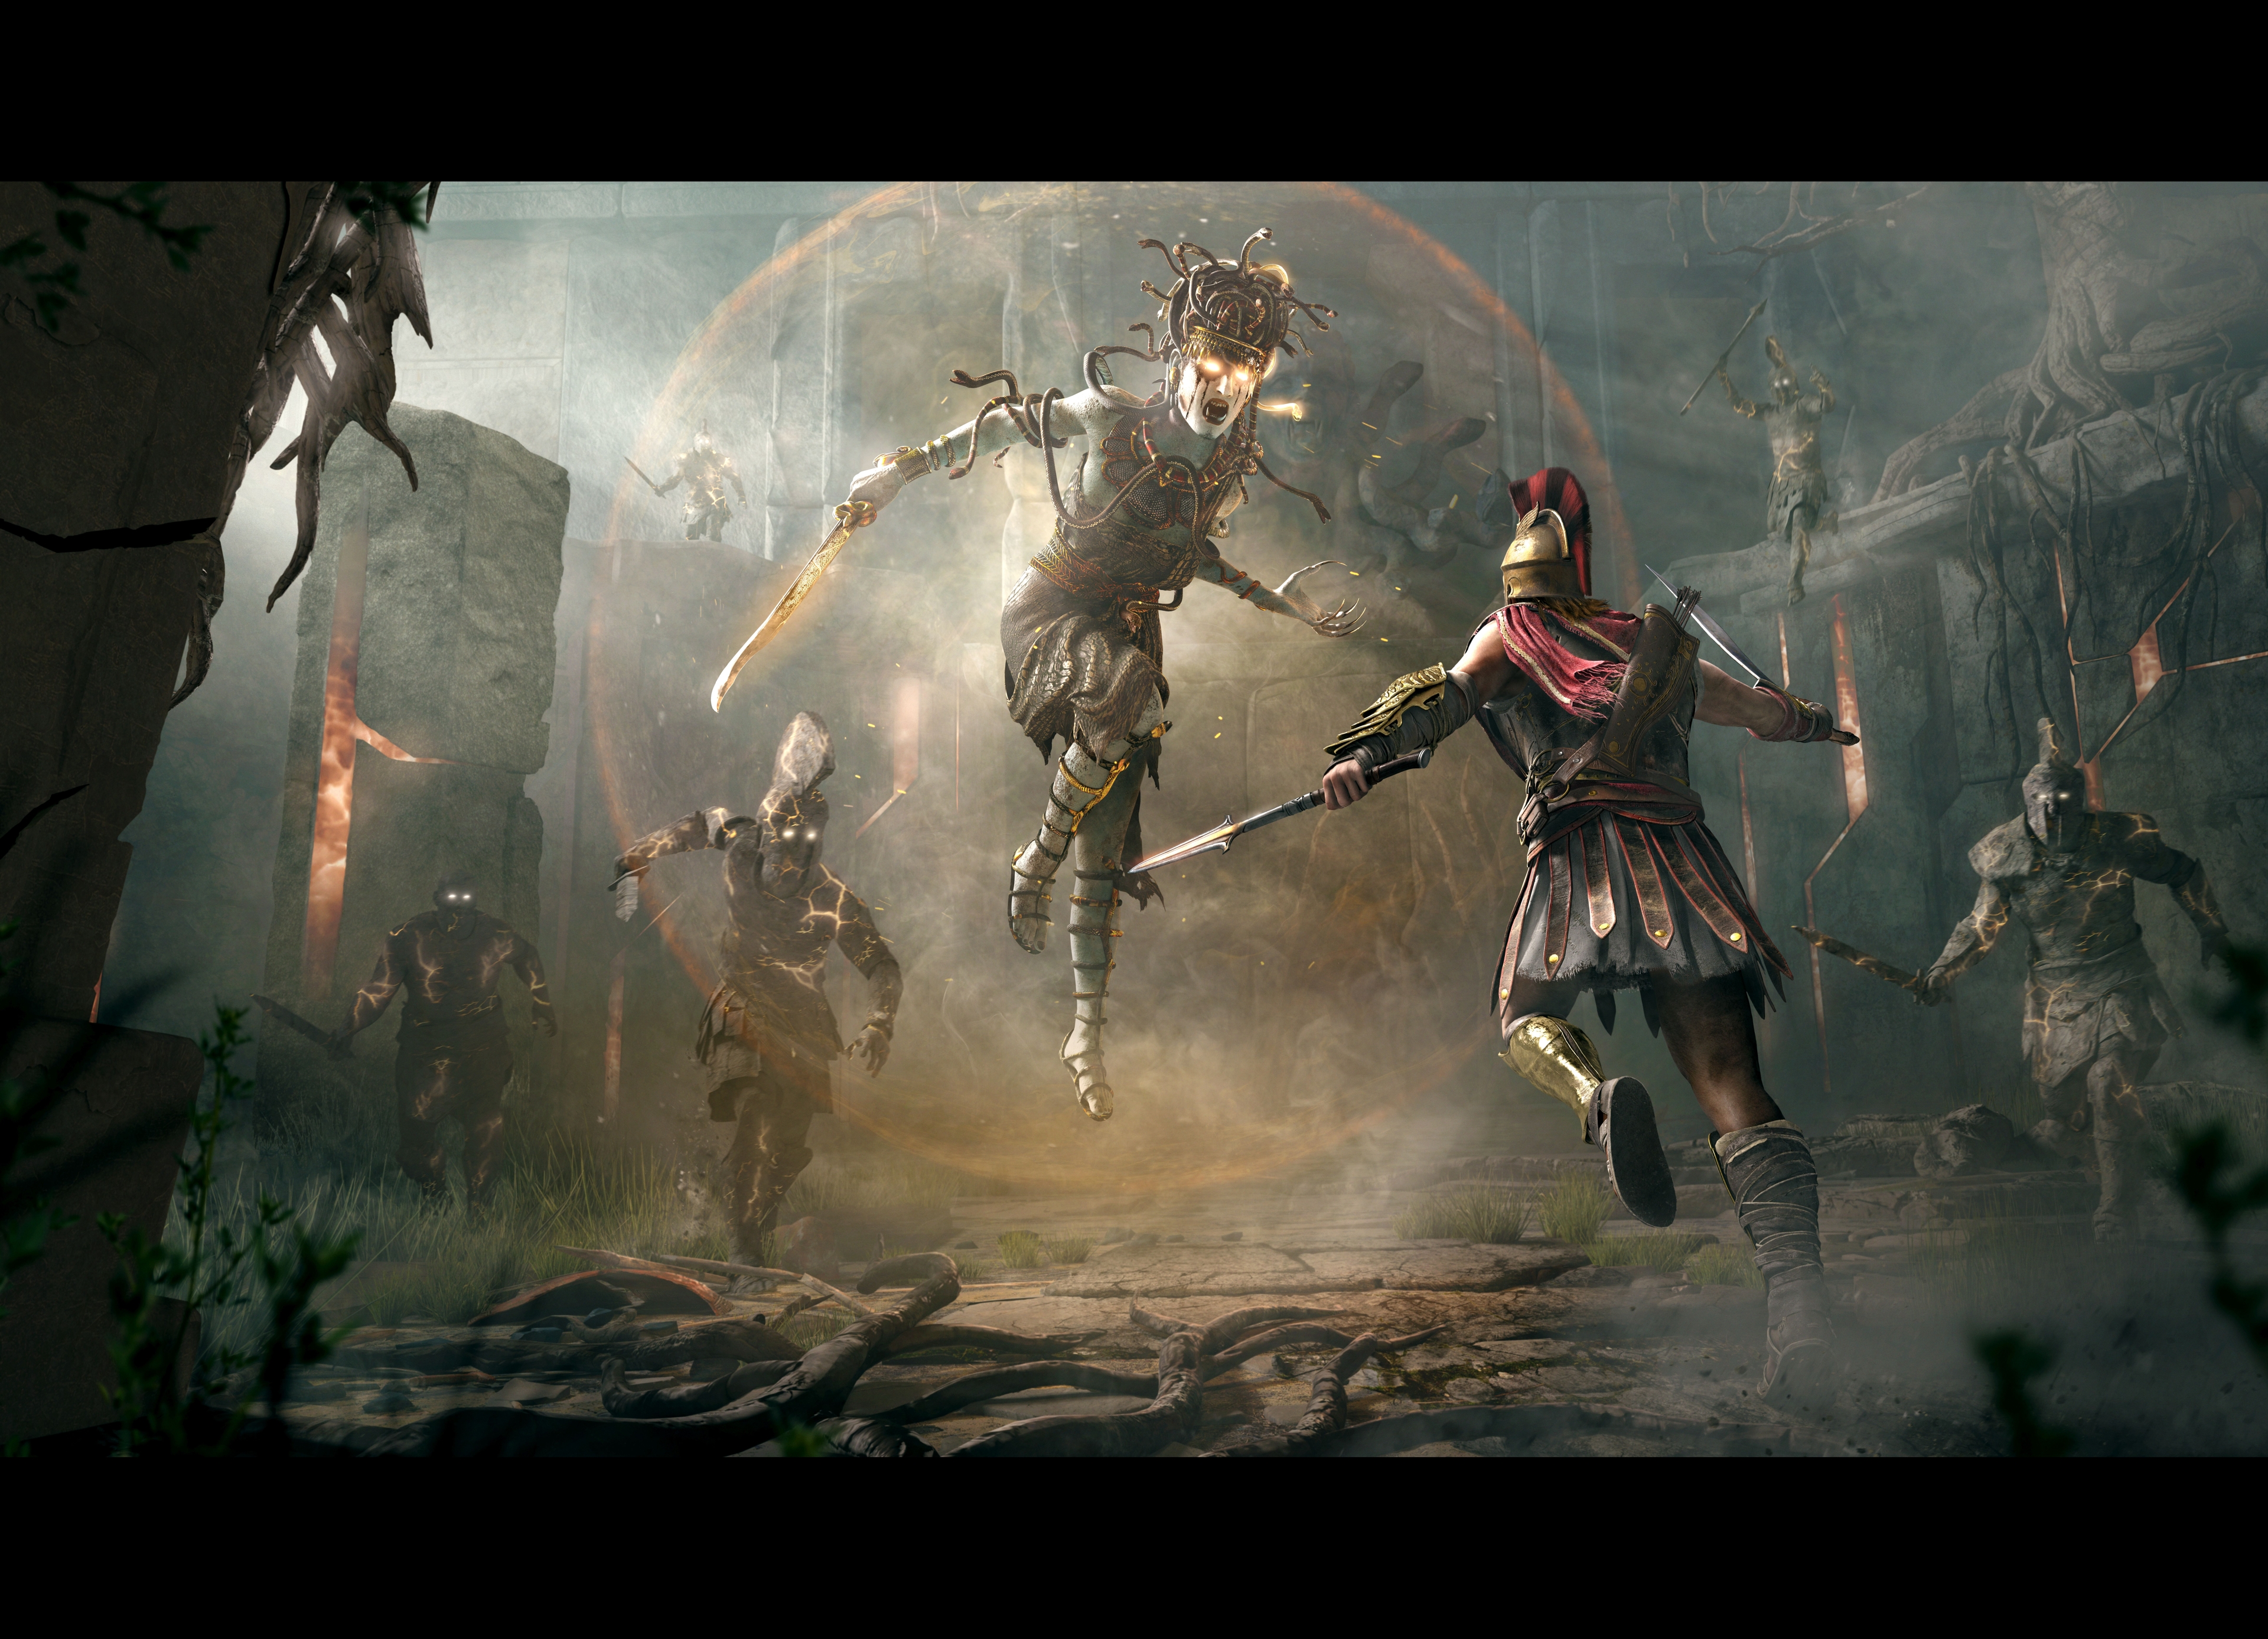 Immagine pubblicata in relazione al seguente contenuto: Assassin's Creed Odyssey: trailer cinematico e screenshots in 4K per GamesCom | Nome immagine: news28628_Assassin-s-Creed-Odyssey-Screenshot_6.jpg